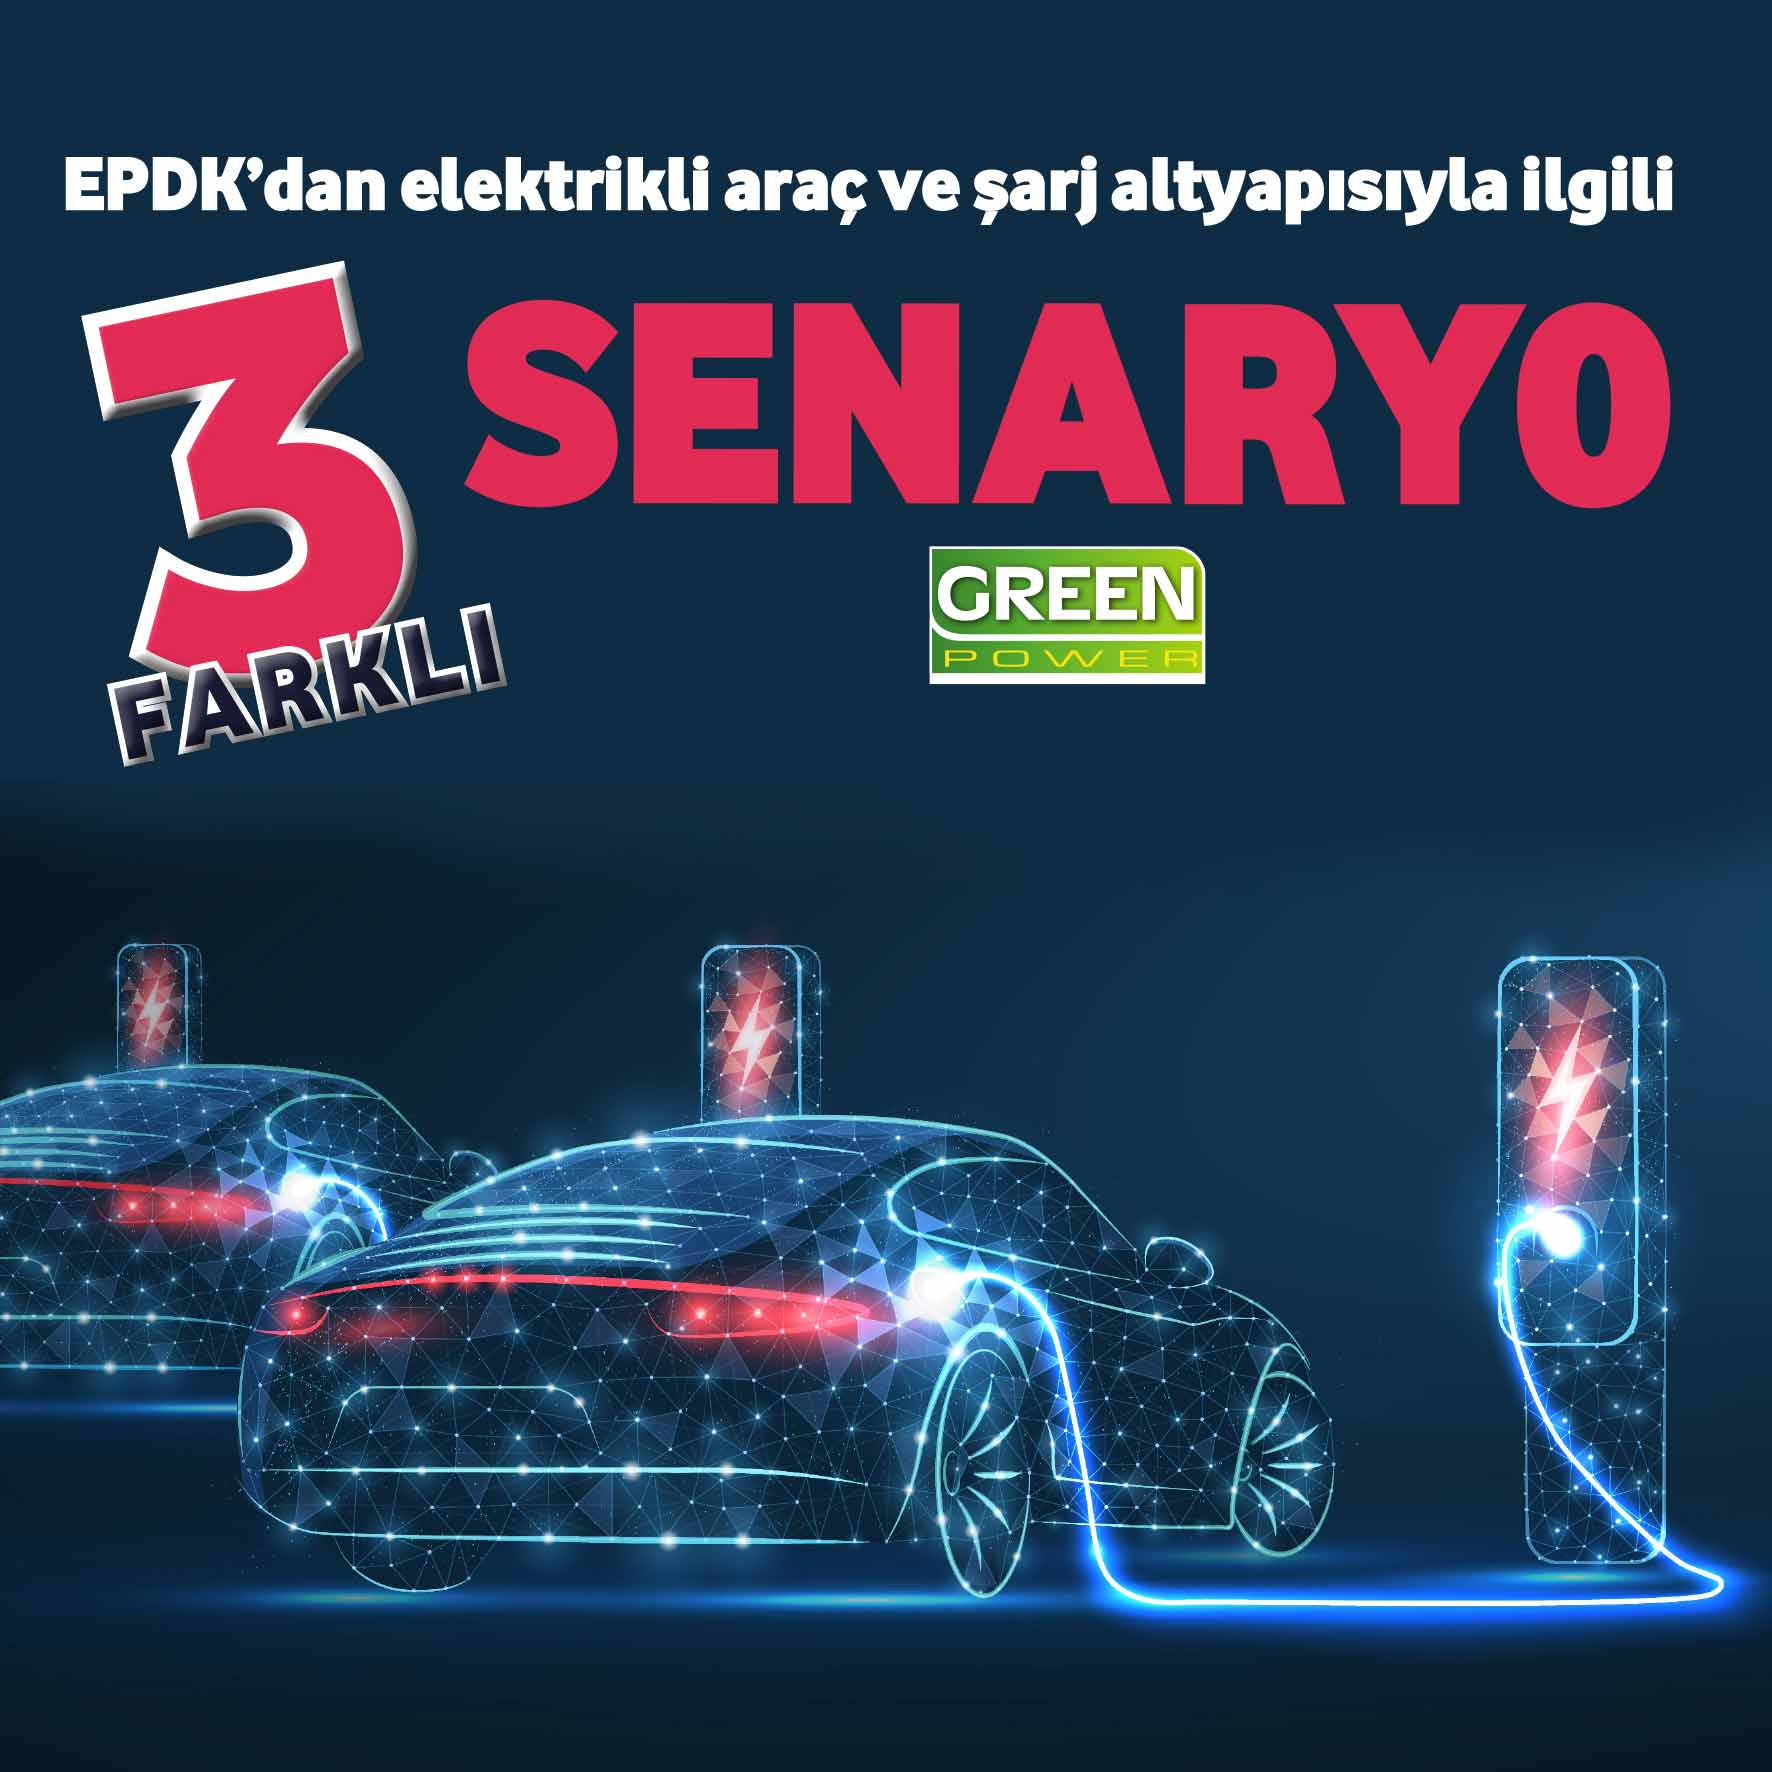 EPDK’dan elektrikli araç ve şarj altyapısıyla ilgili 3 farklı senaryo